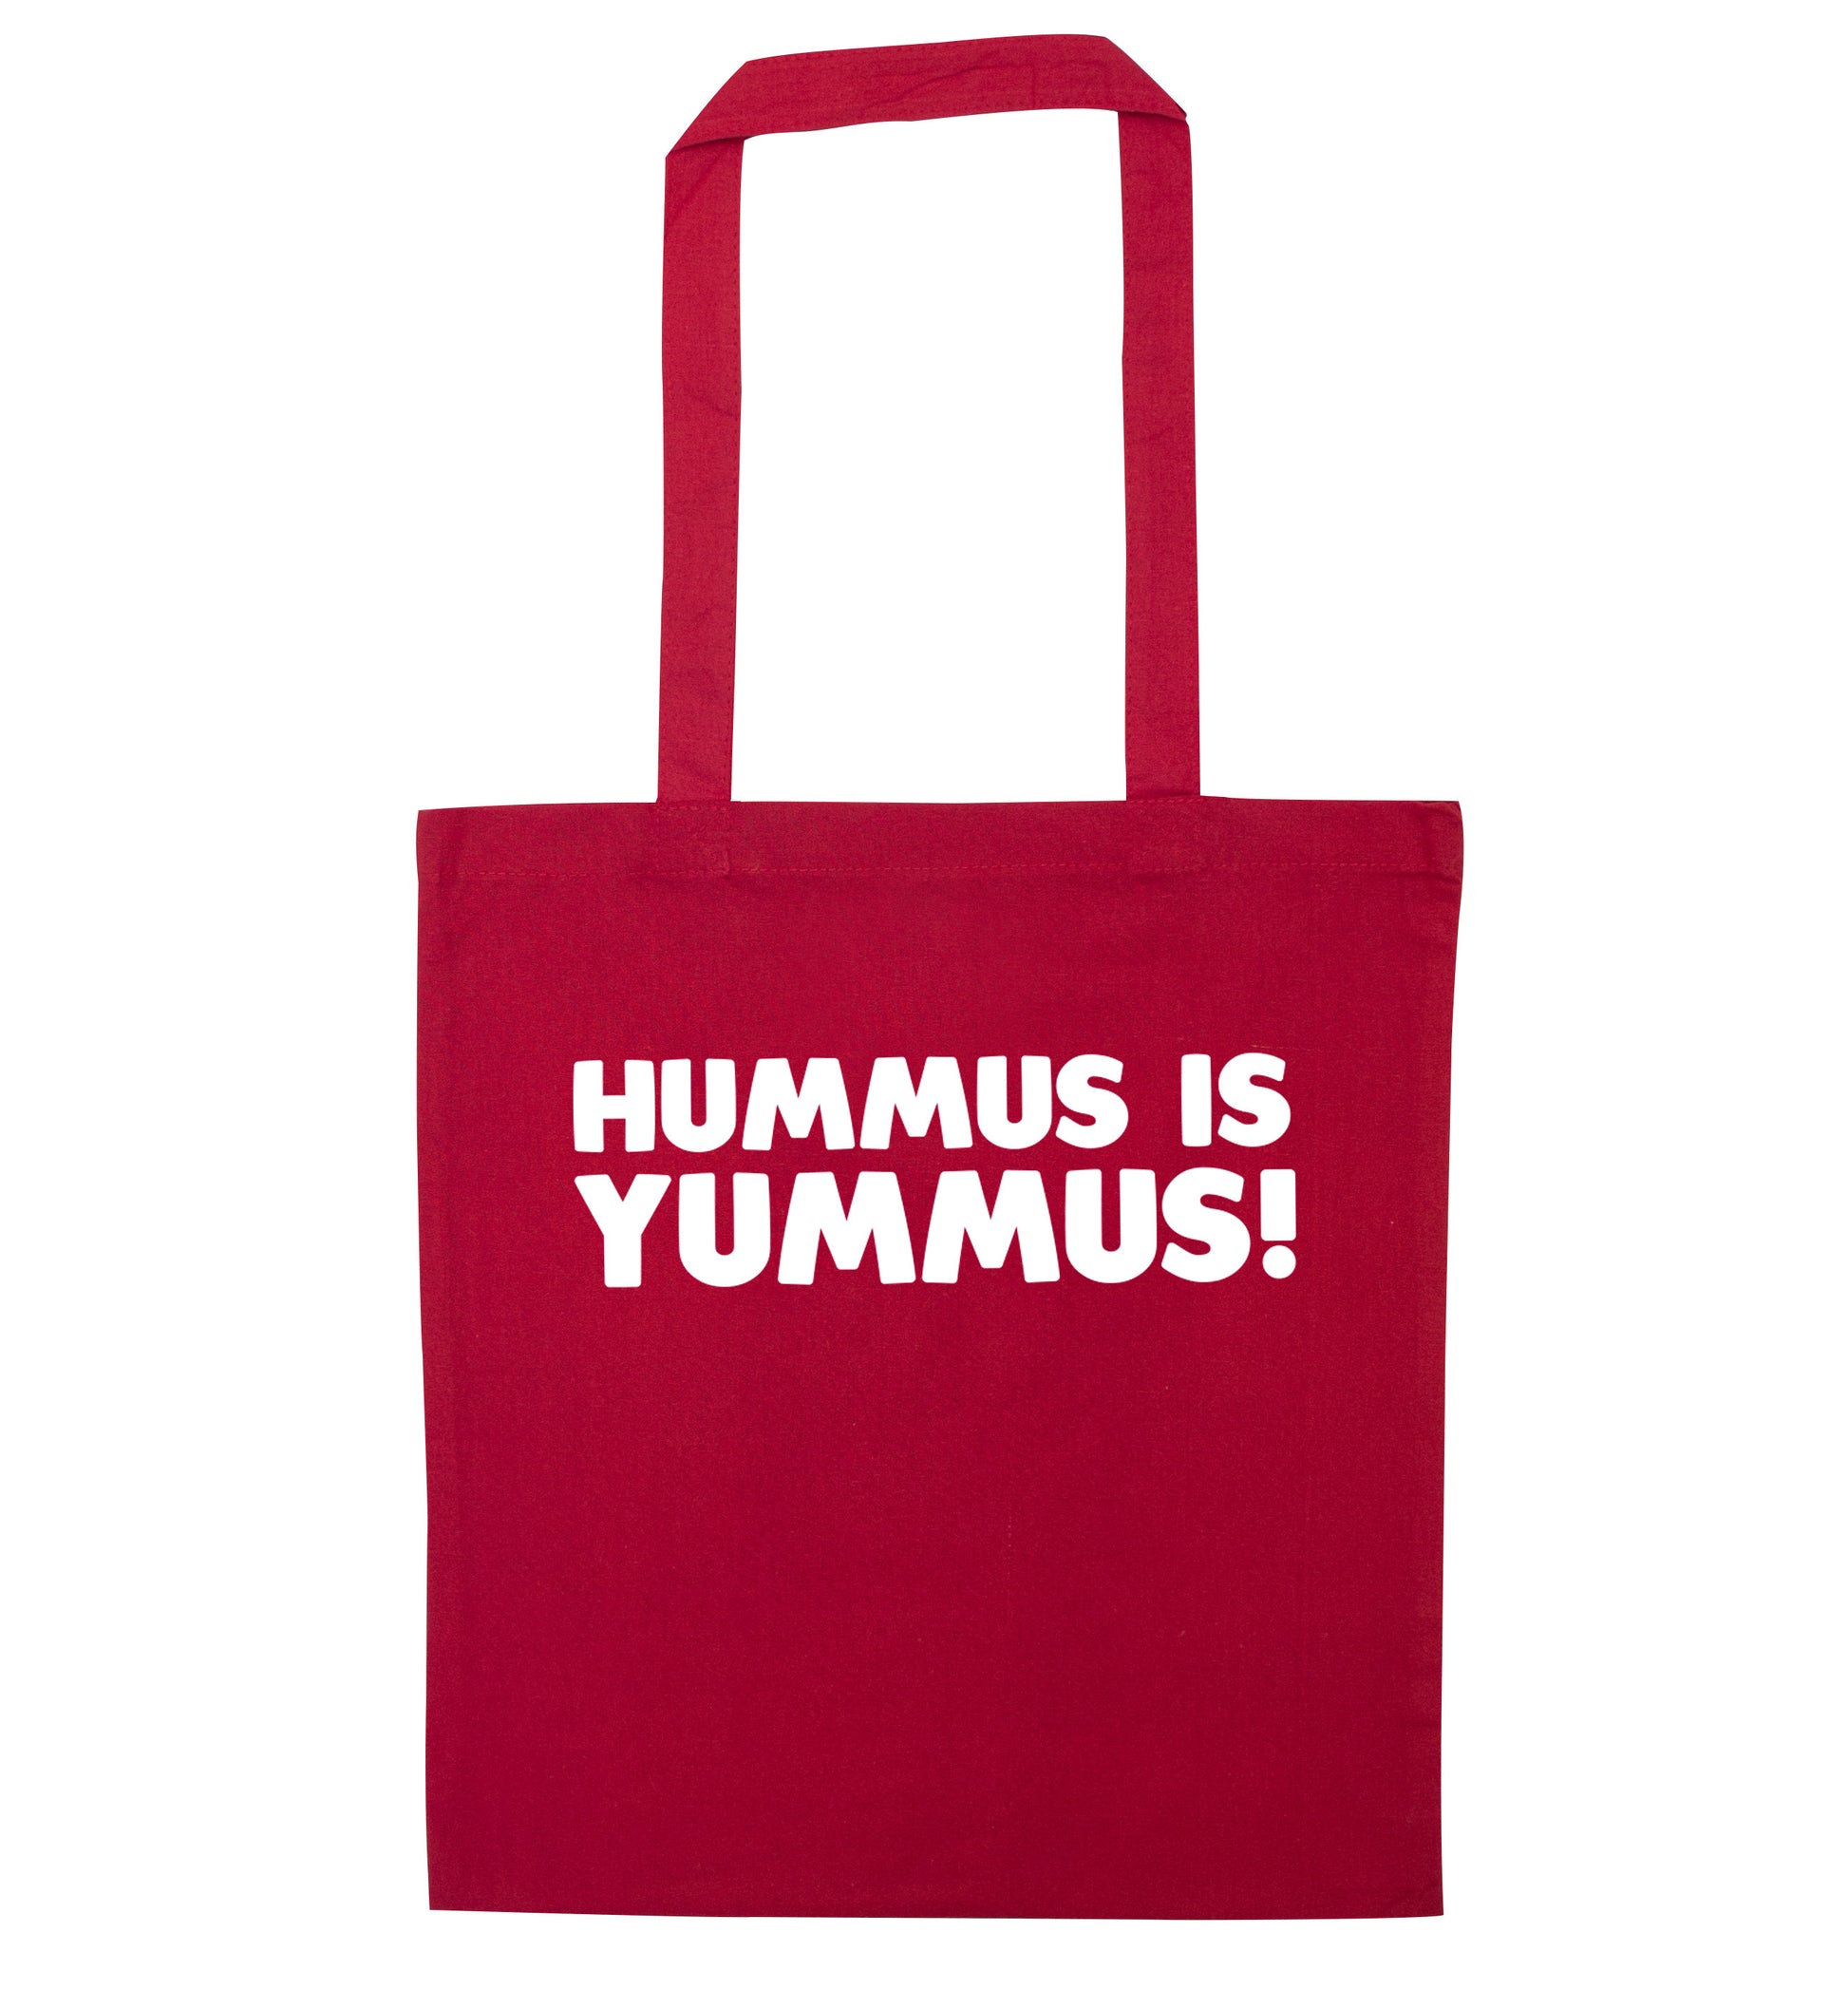 Hummus is Yummus  red tote bag